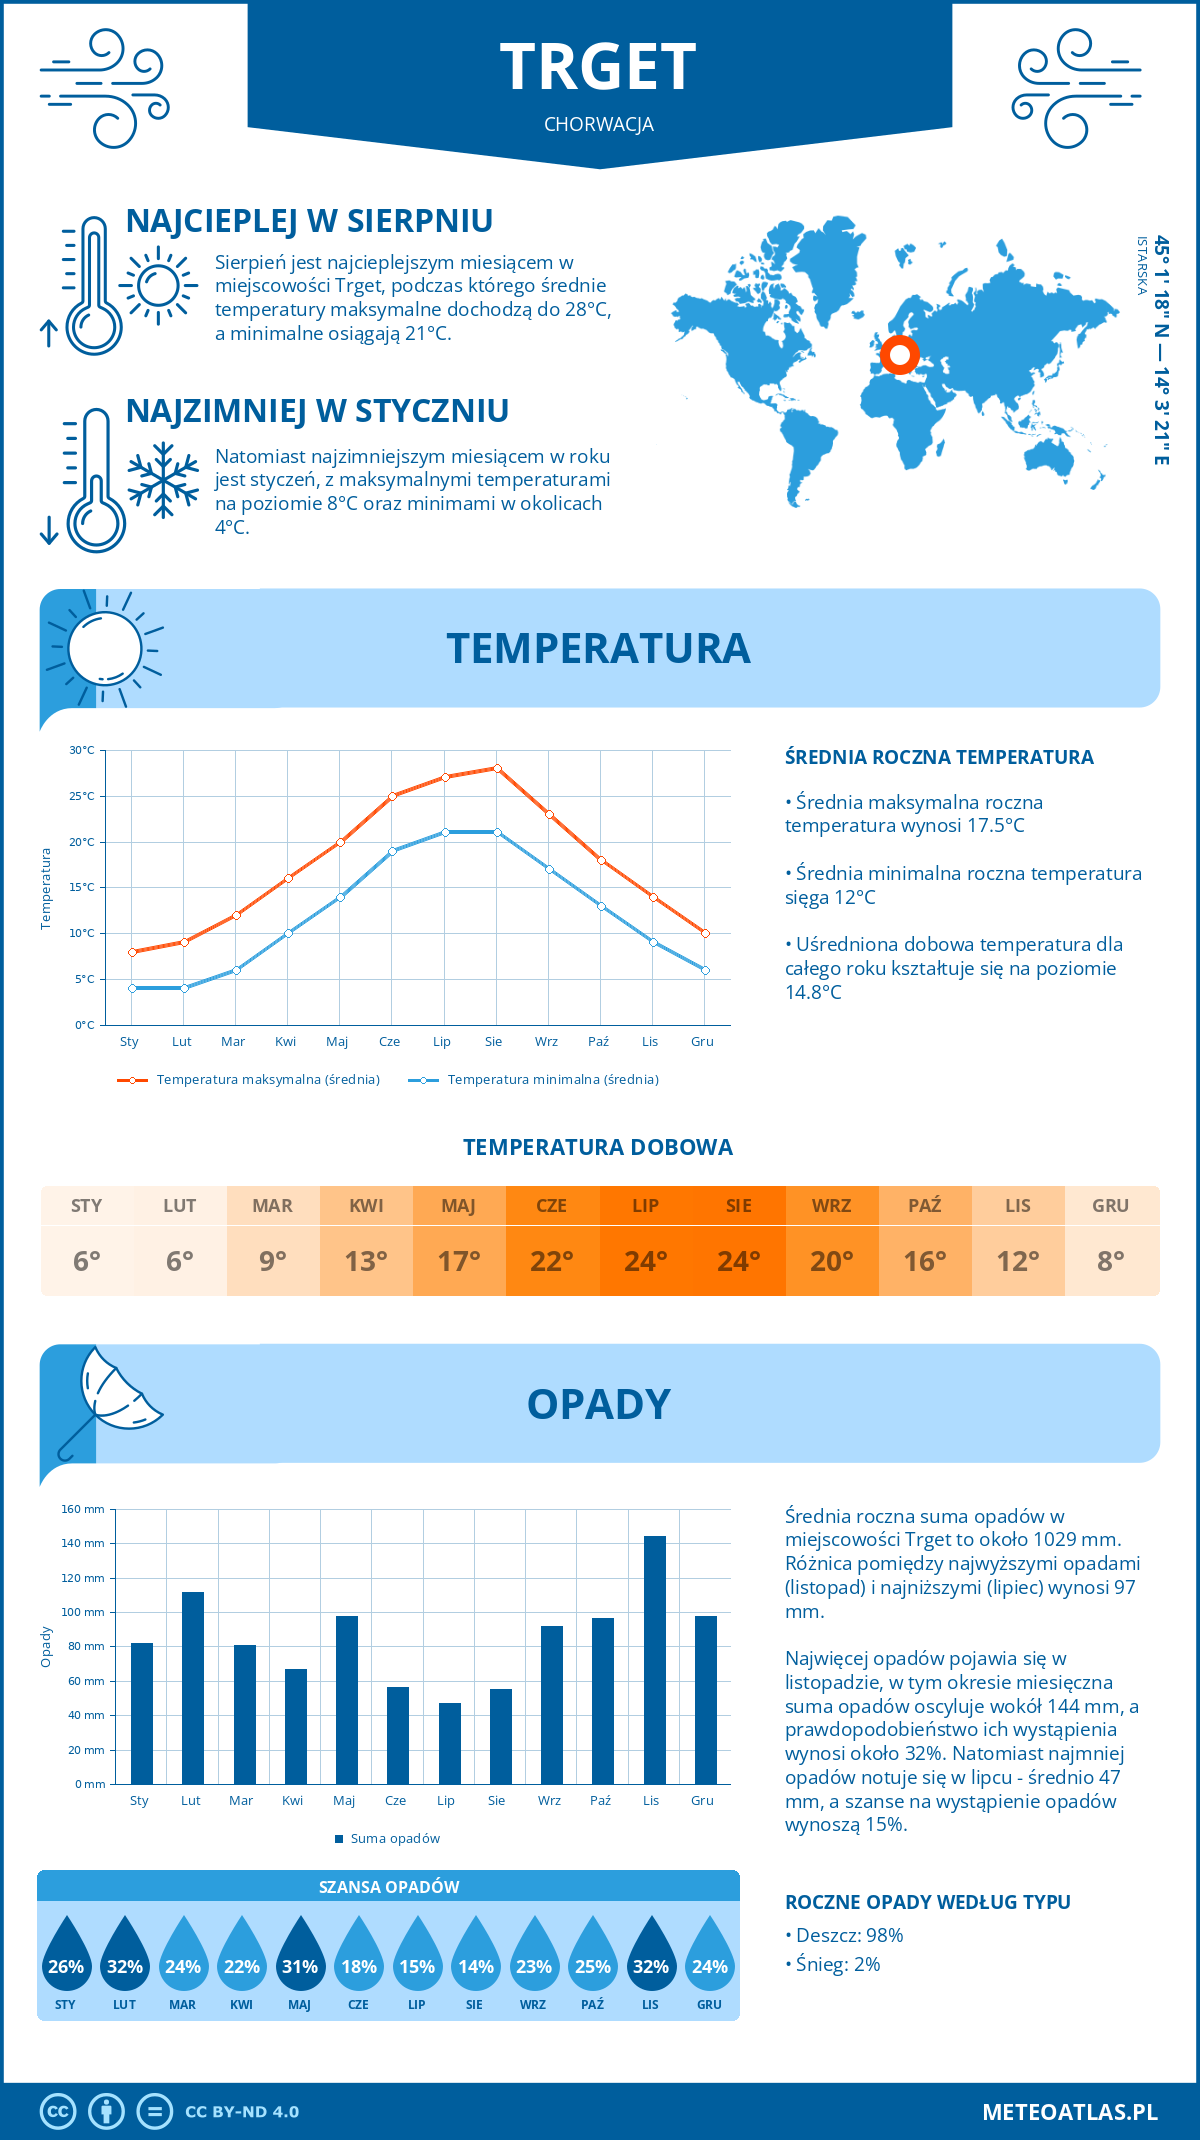 Pogoda Trget (Chorwacja). Temperatura oraz opady.